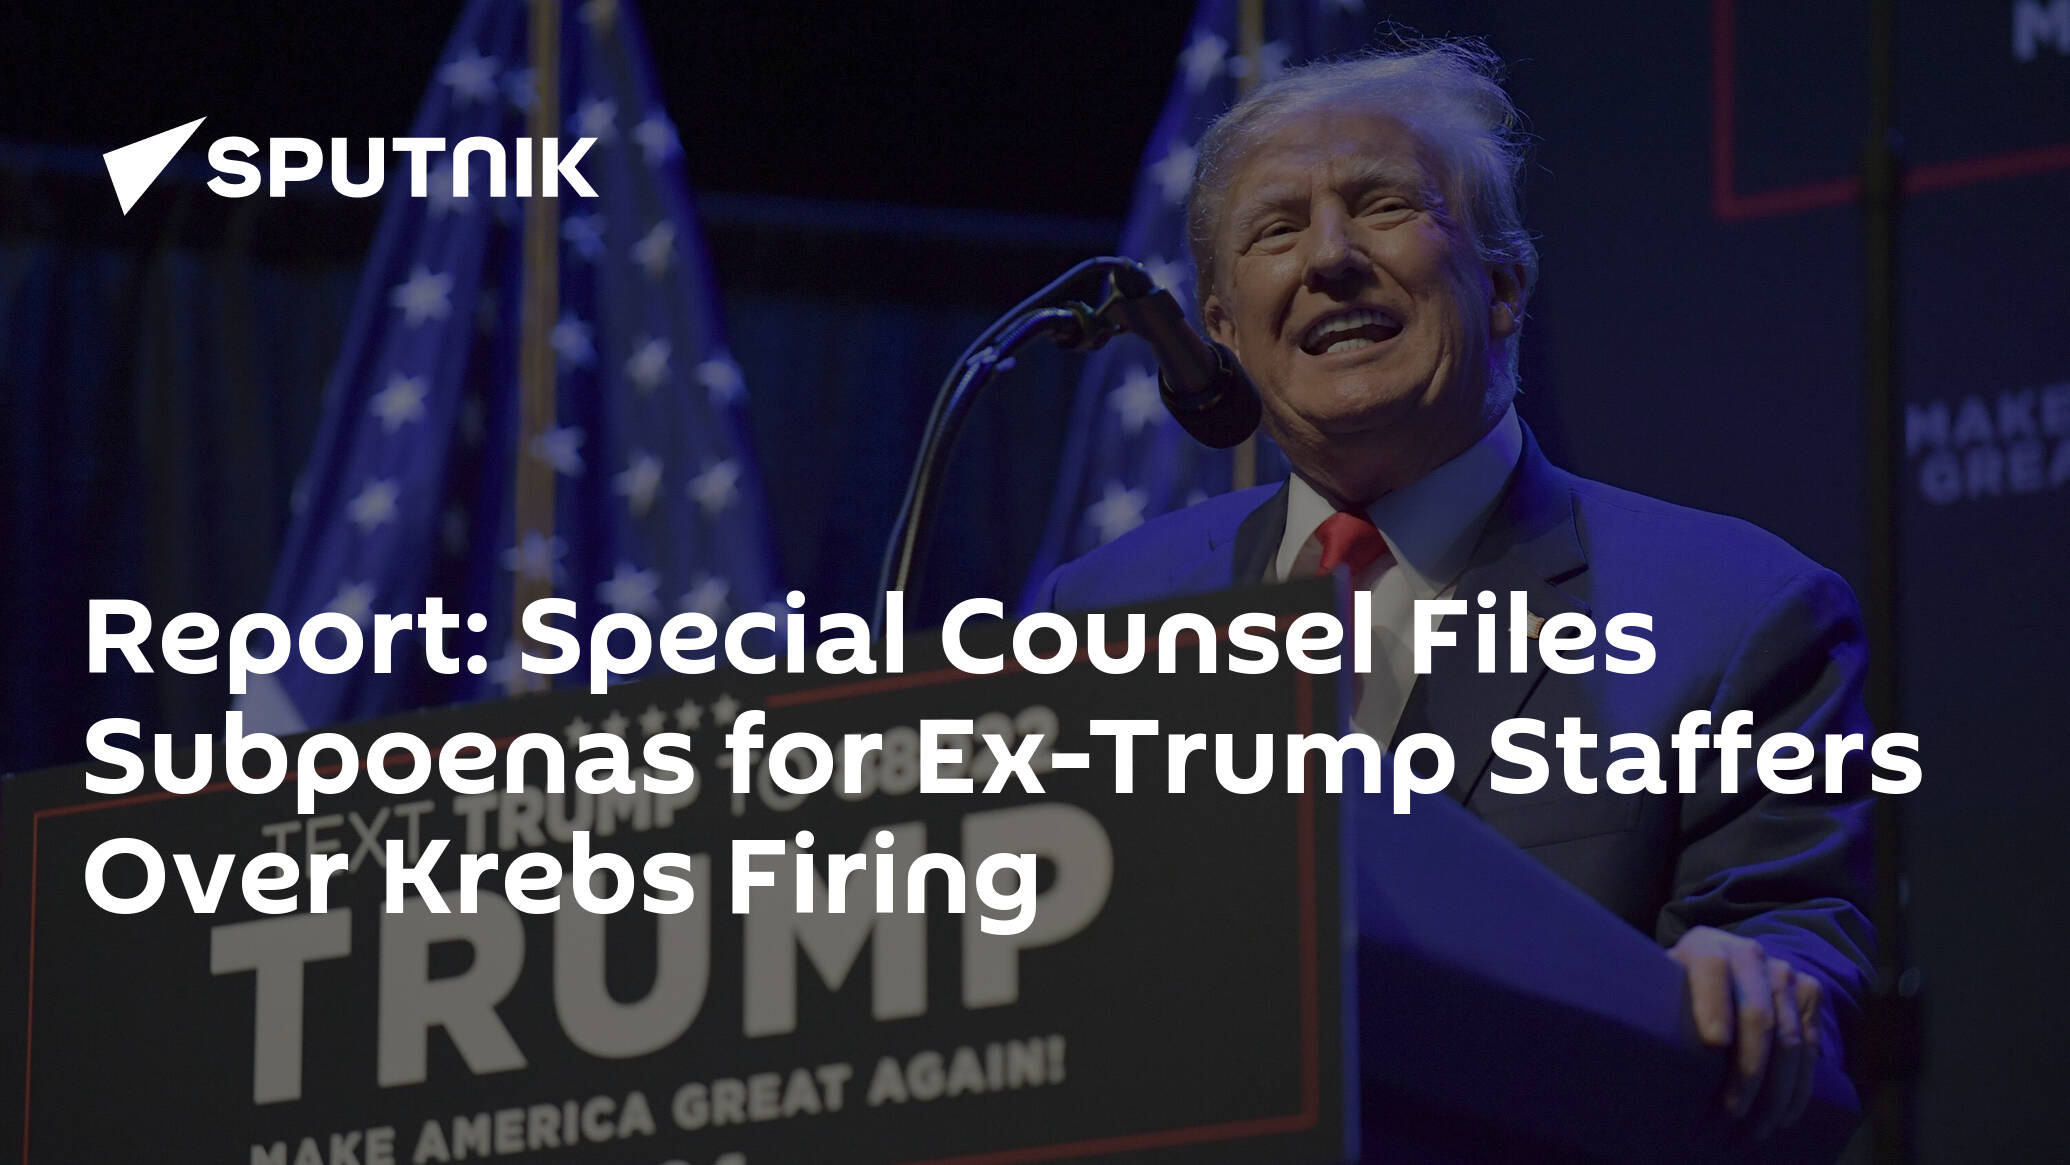 Ex-Trump Staffers Subpoenaed Over Krebs Firing